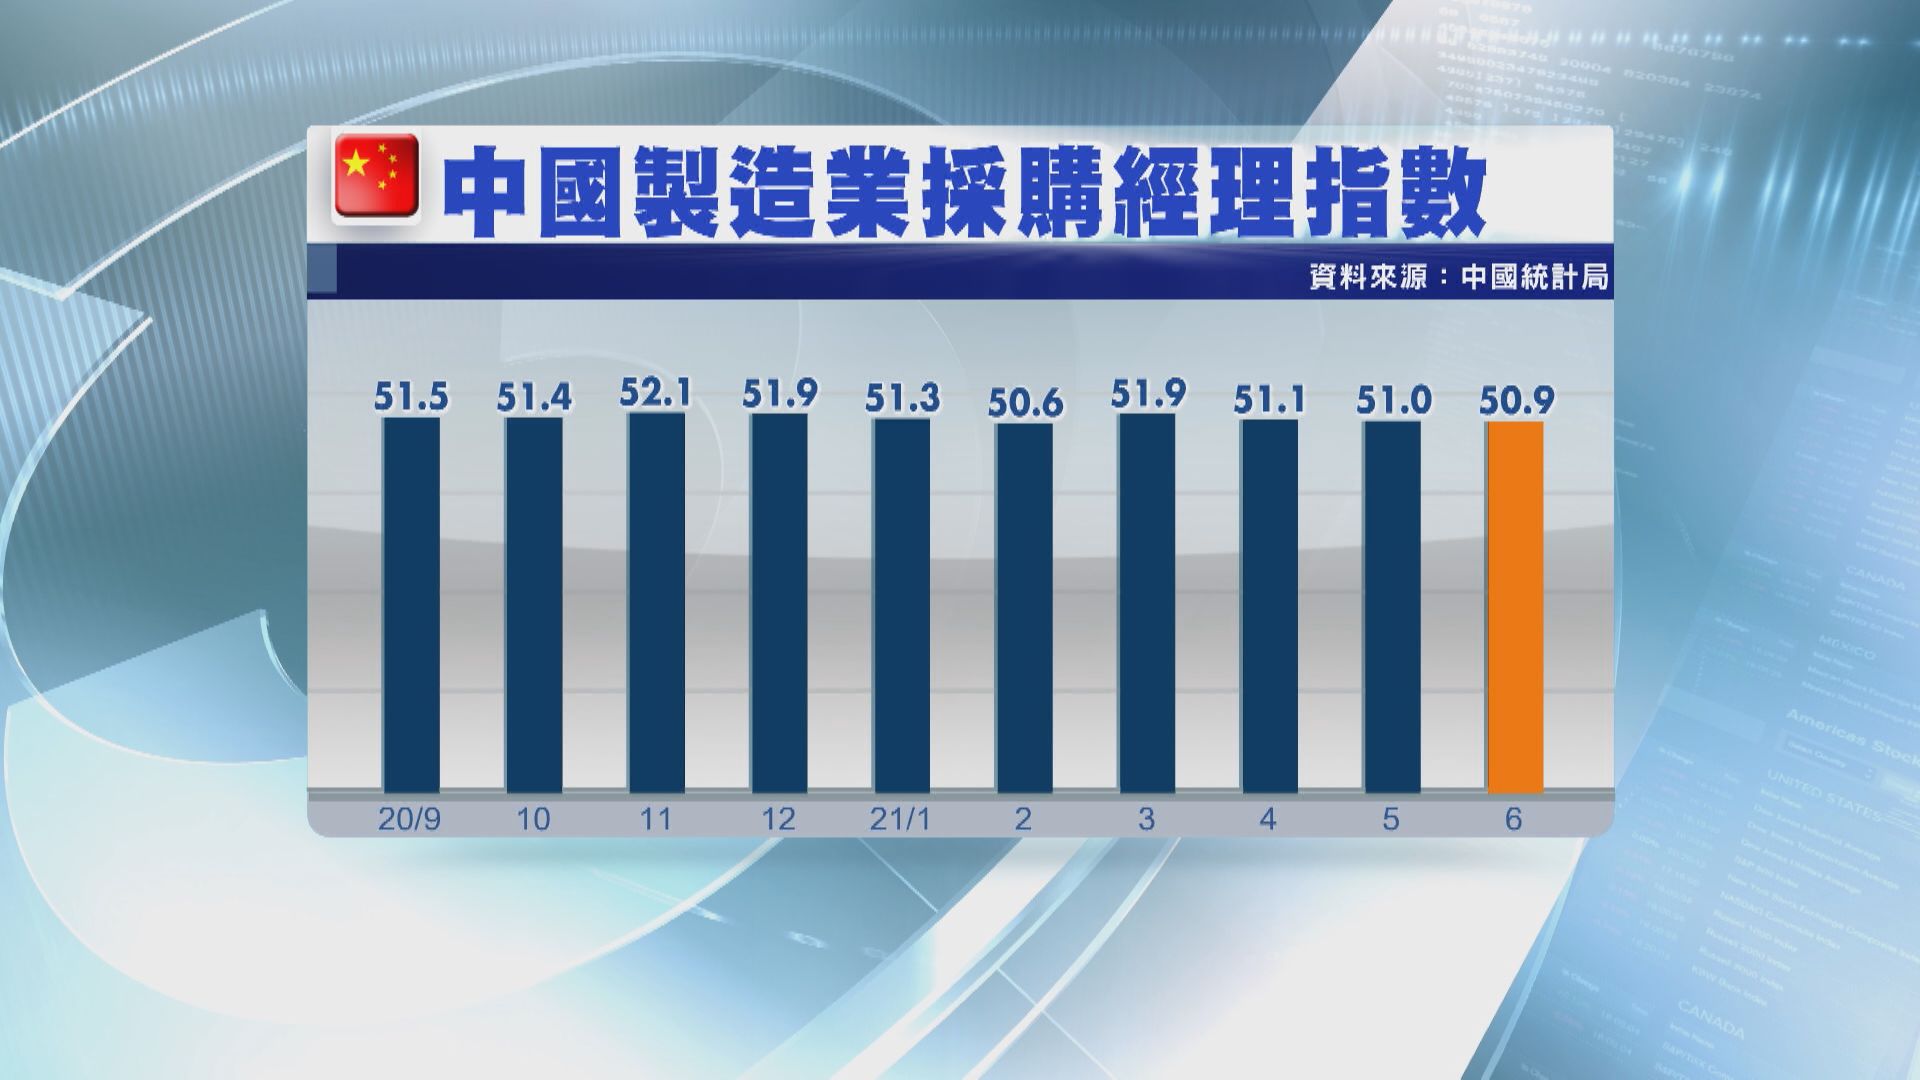 PMI數據反映中國製造業及服務業活動有所減慢